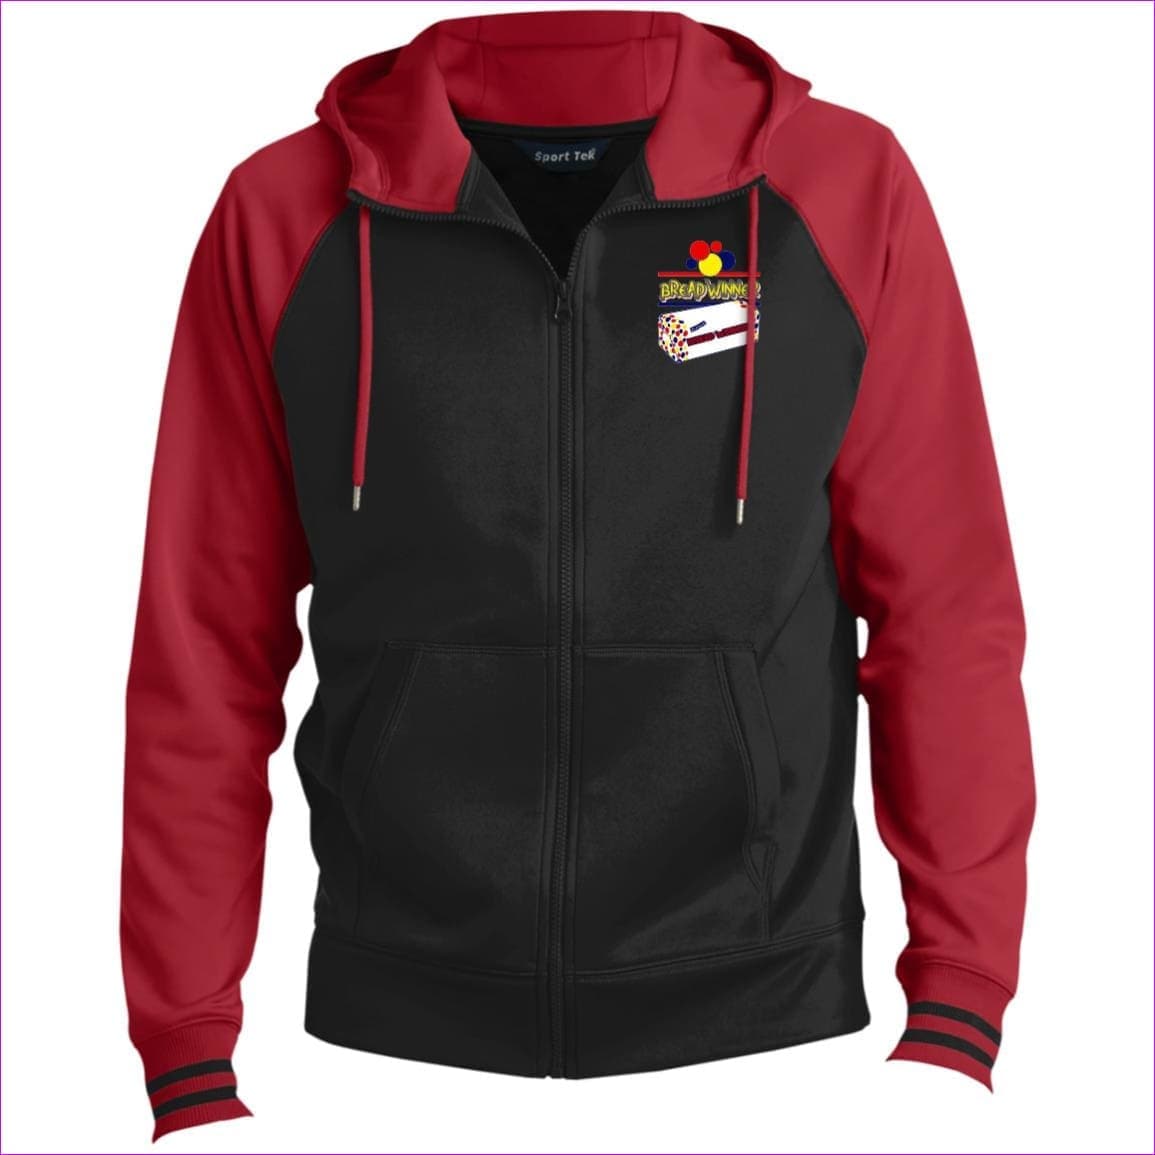 Black/Deep Red Bread Winner Men's Sport-Wick® Full-Zip Hooded Jacket - Men's Jackets at TFC&H Co.